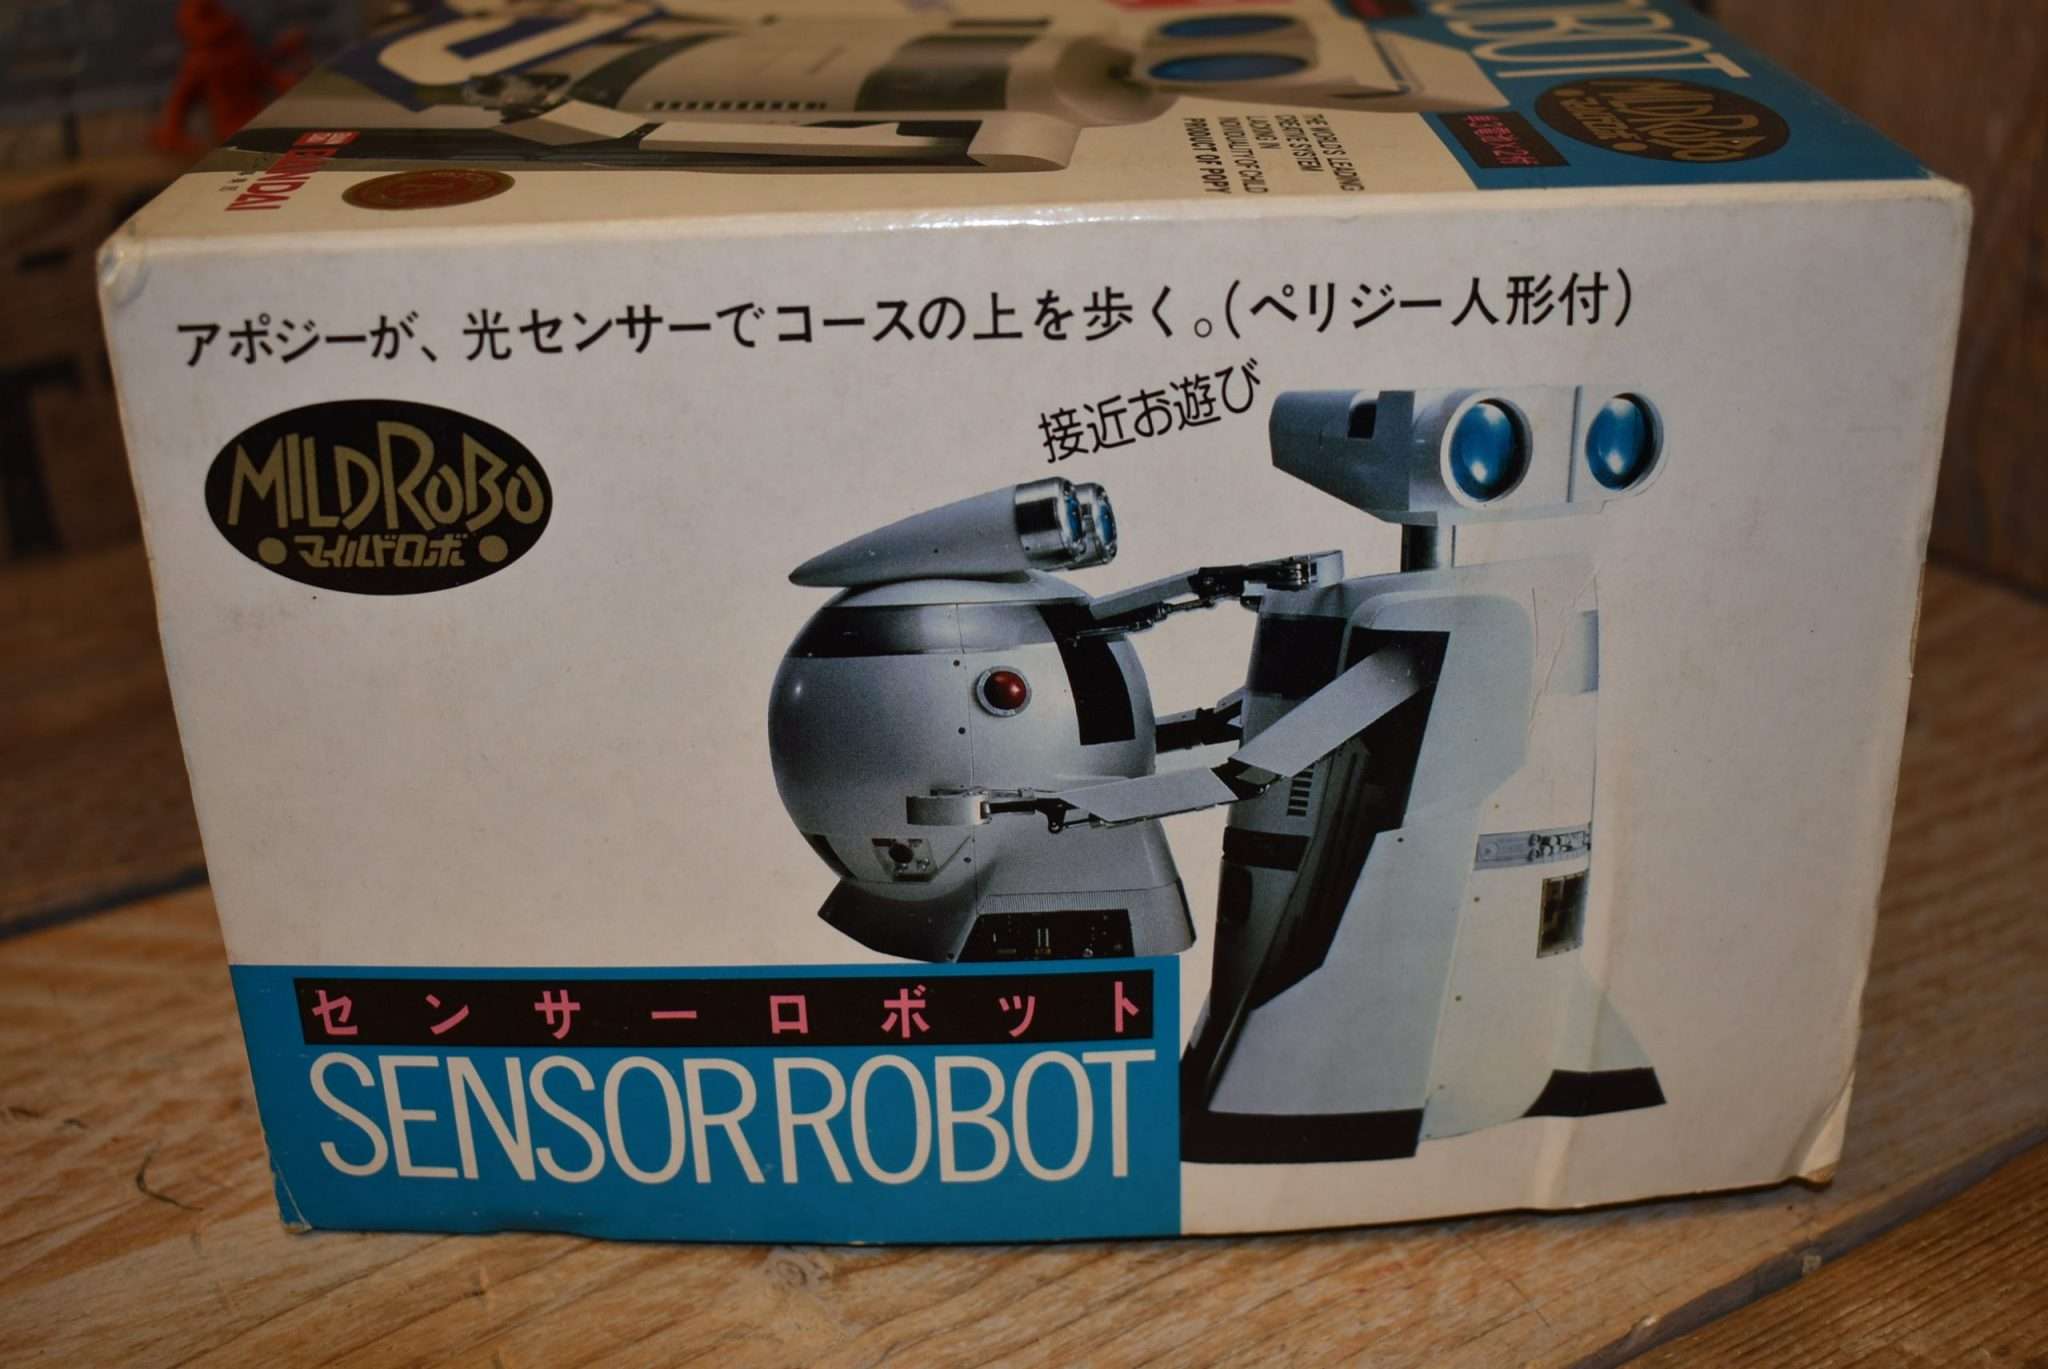 Bandai - Sensor Robot